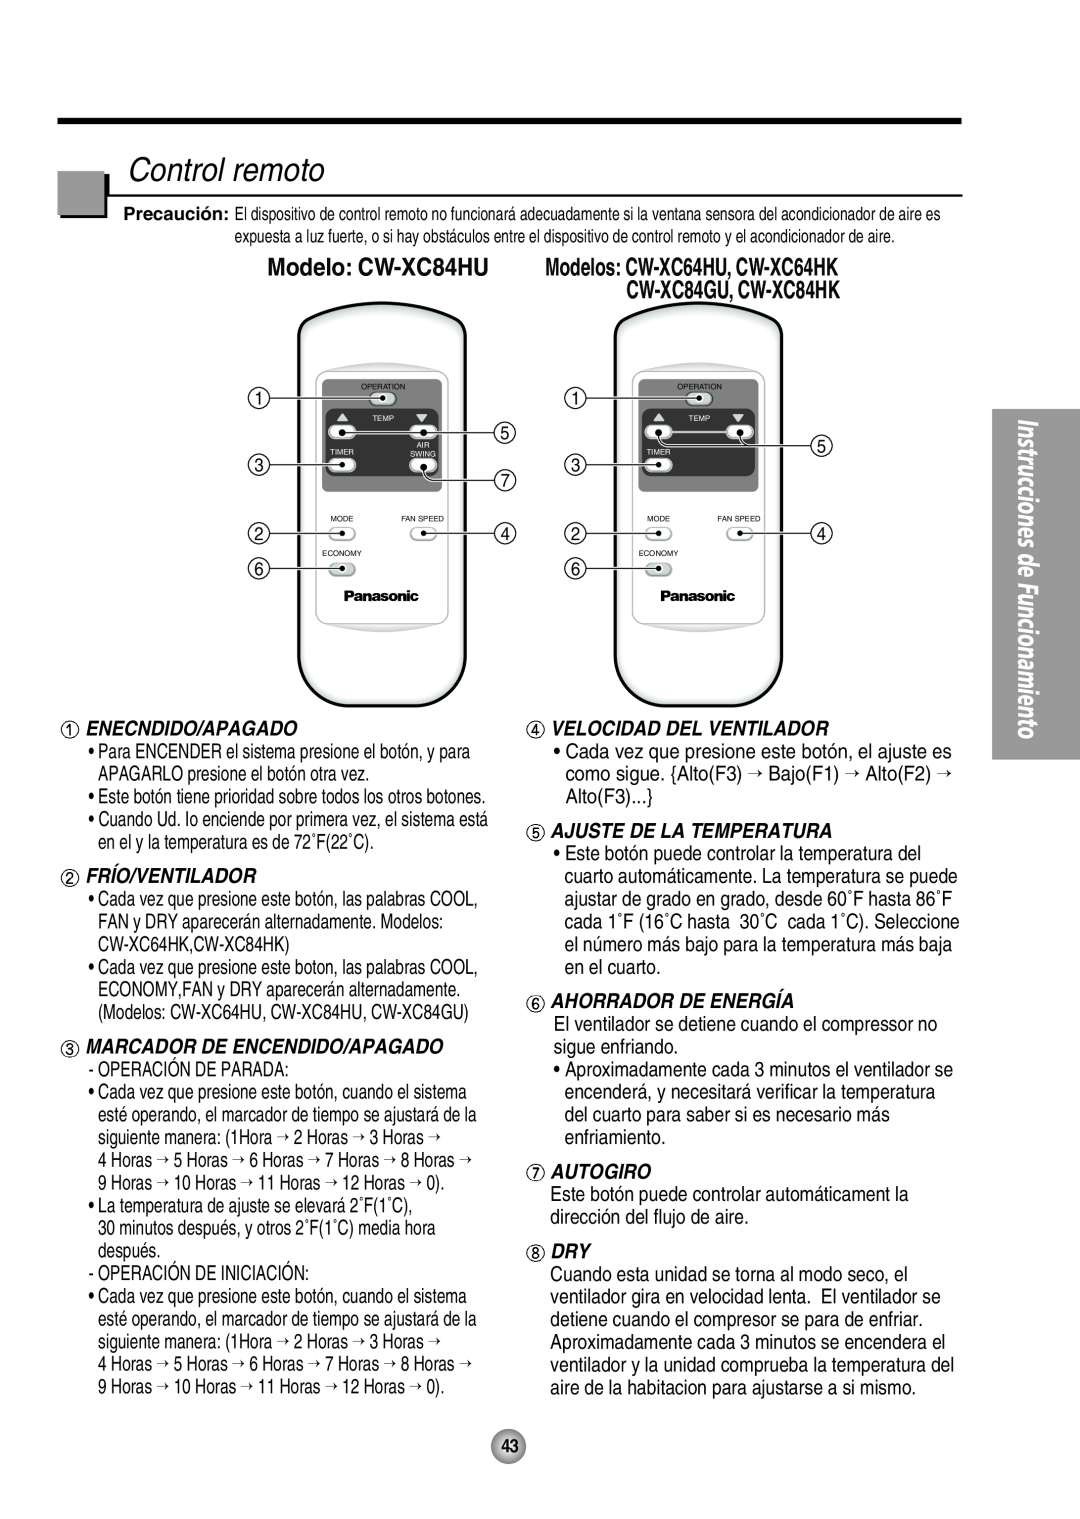 Panasonic CW-XC64HU Control remoto, Modelo CW-XC84HU, Ahorrador De Energía, Enecndido/Apagado, Frío/Ventilador, Autogiro 